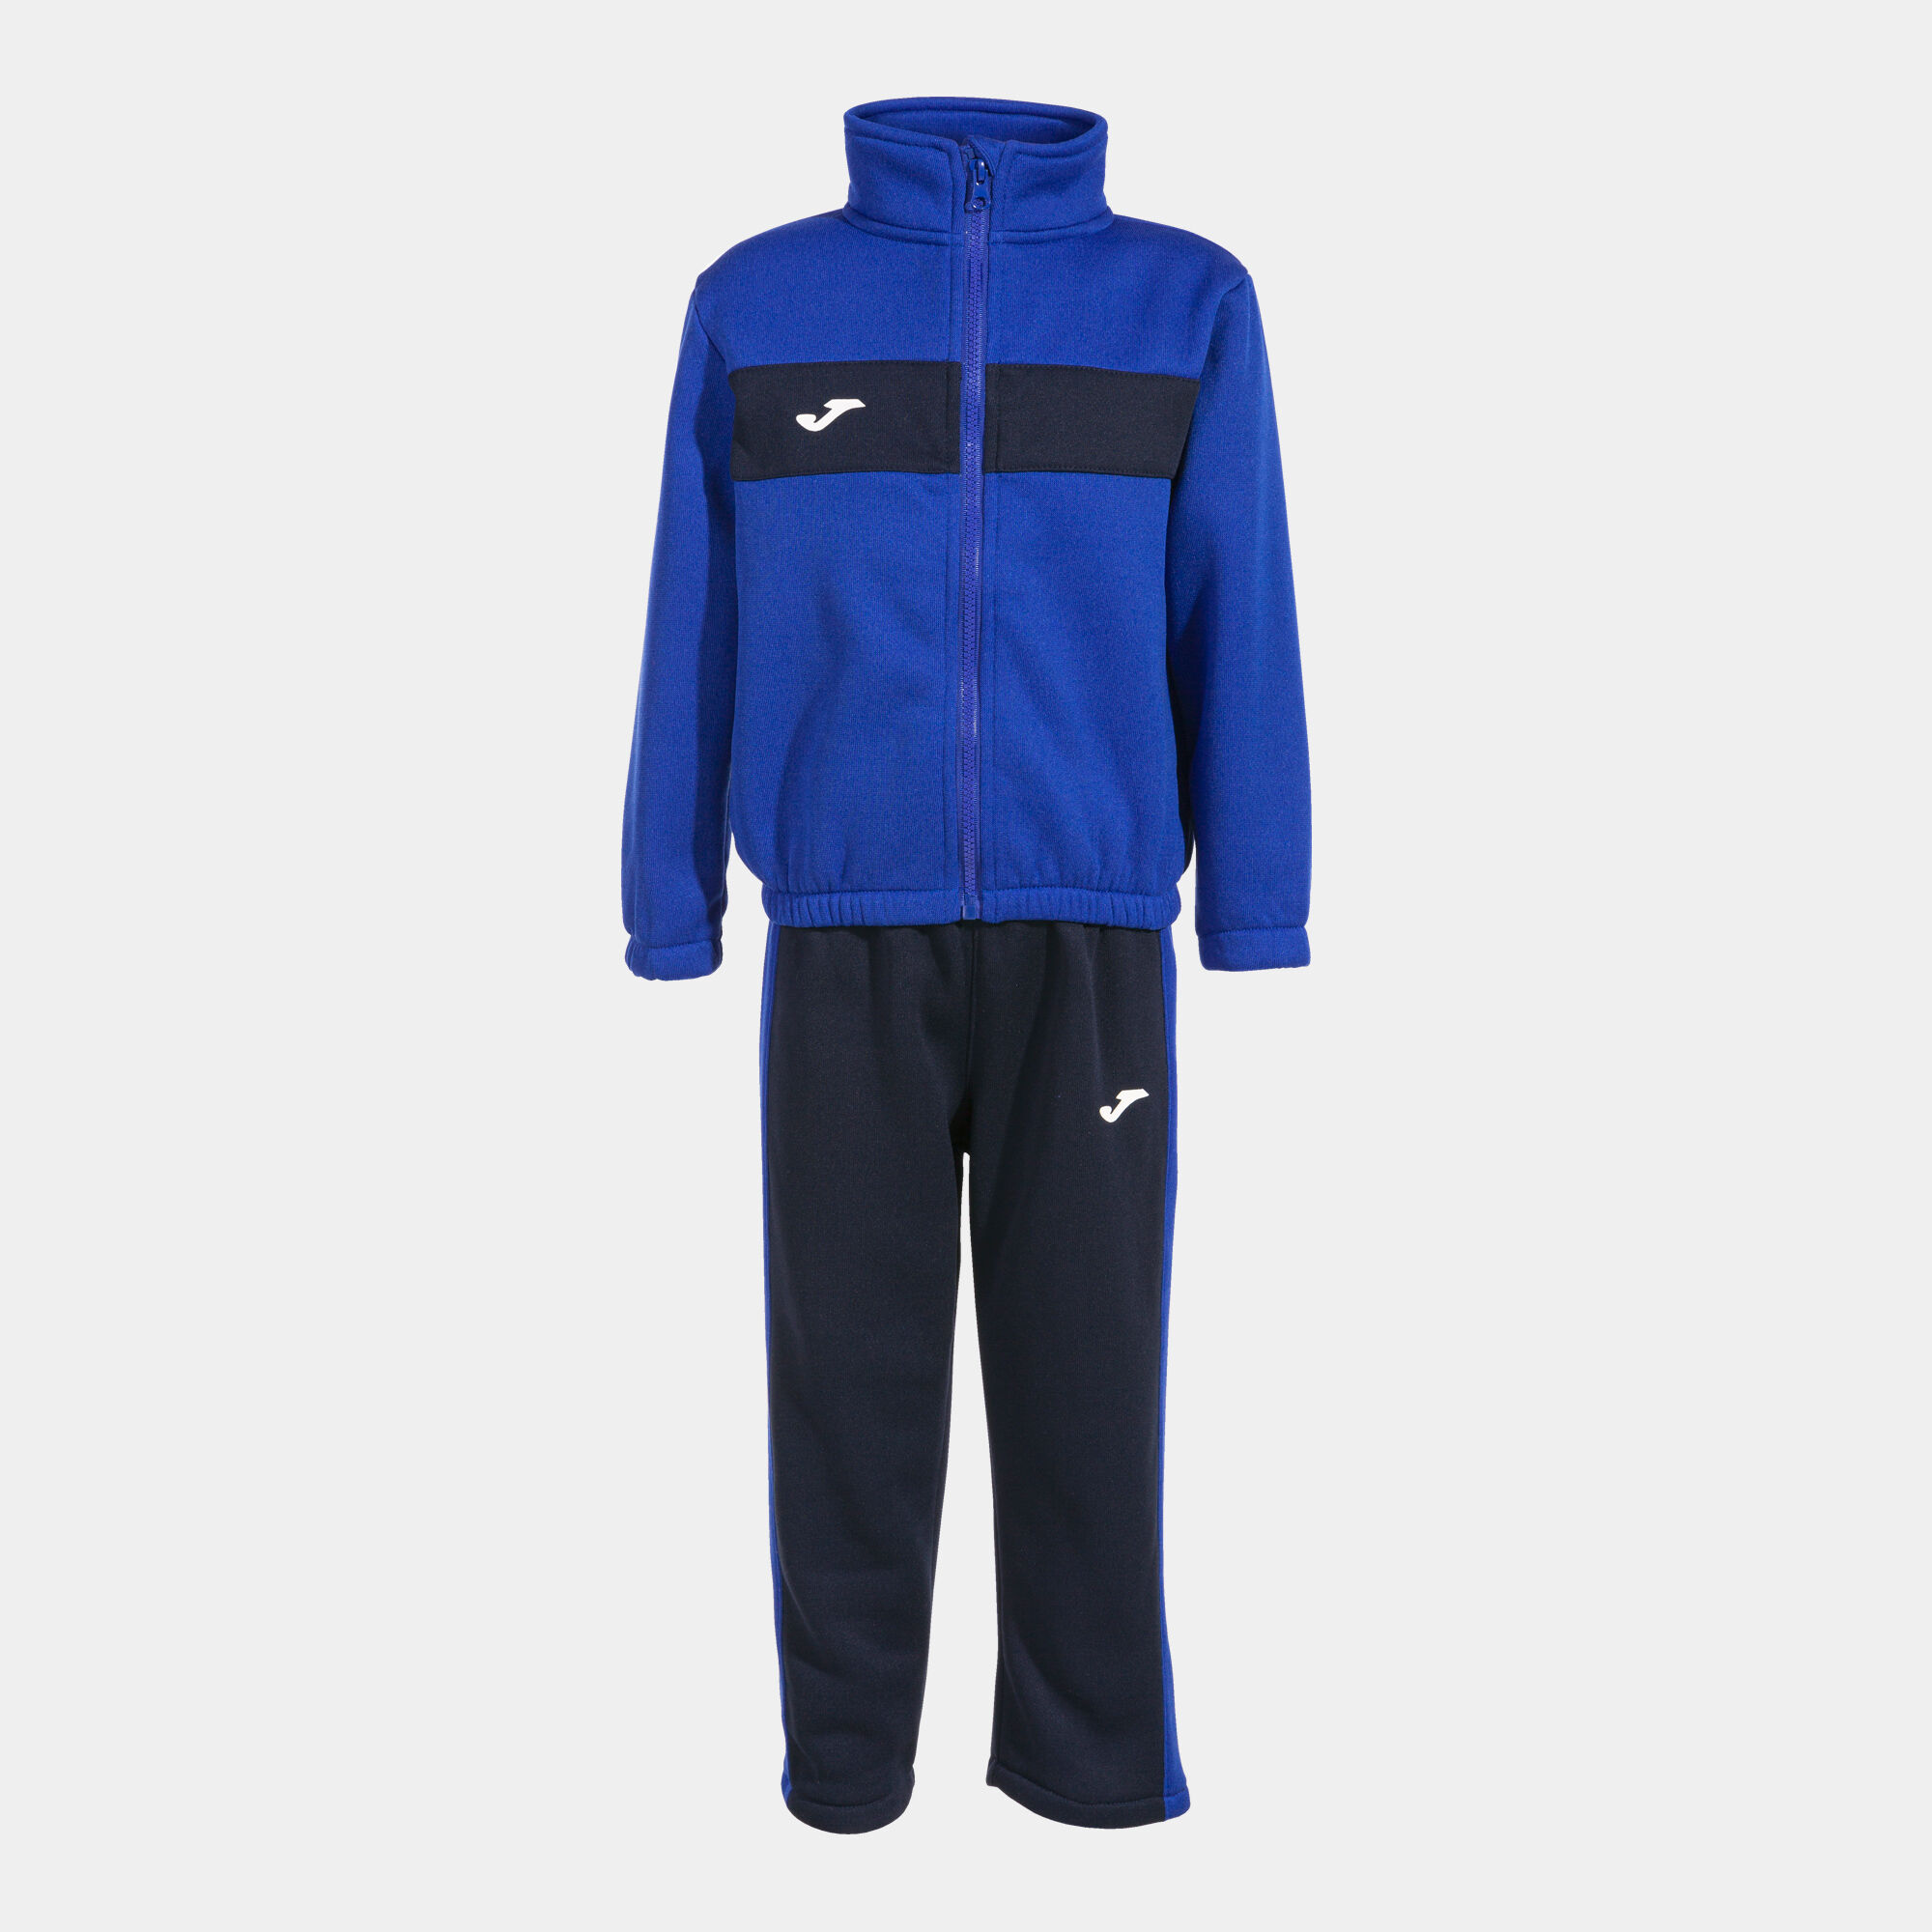 Trainingsanzug junior Stripe blau marineblau